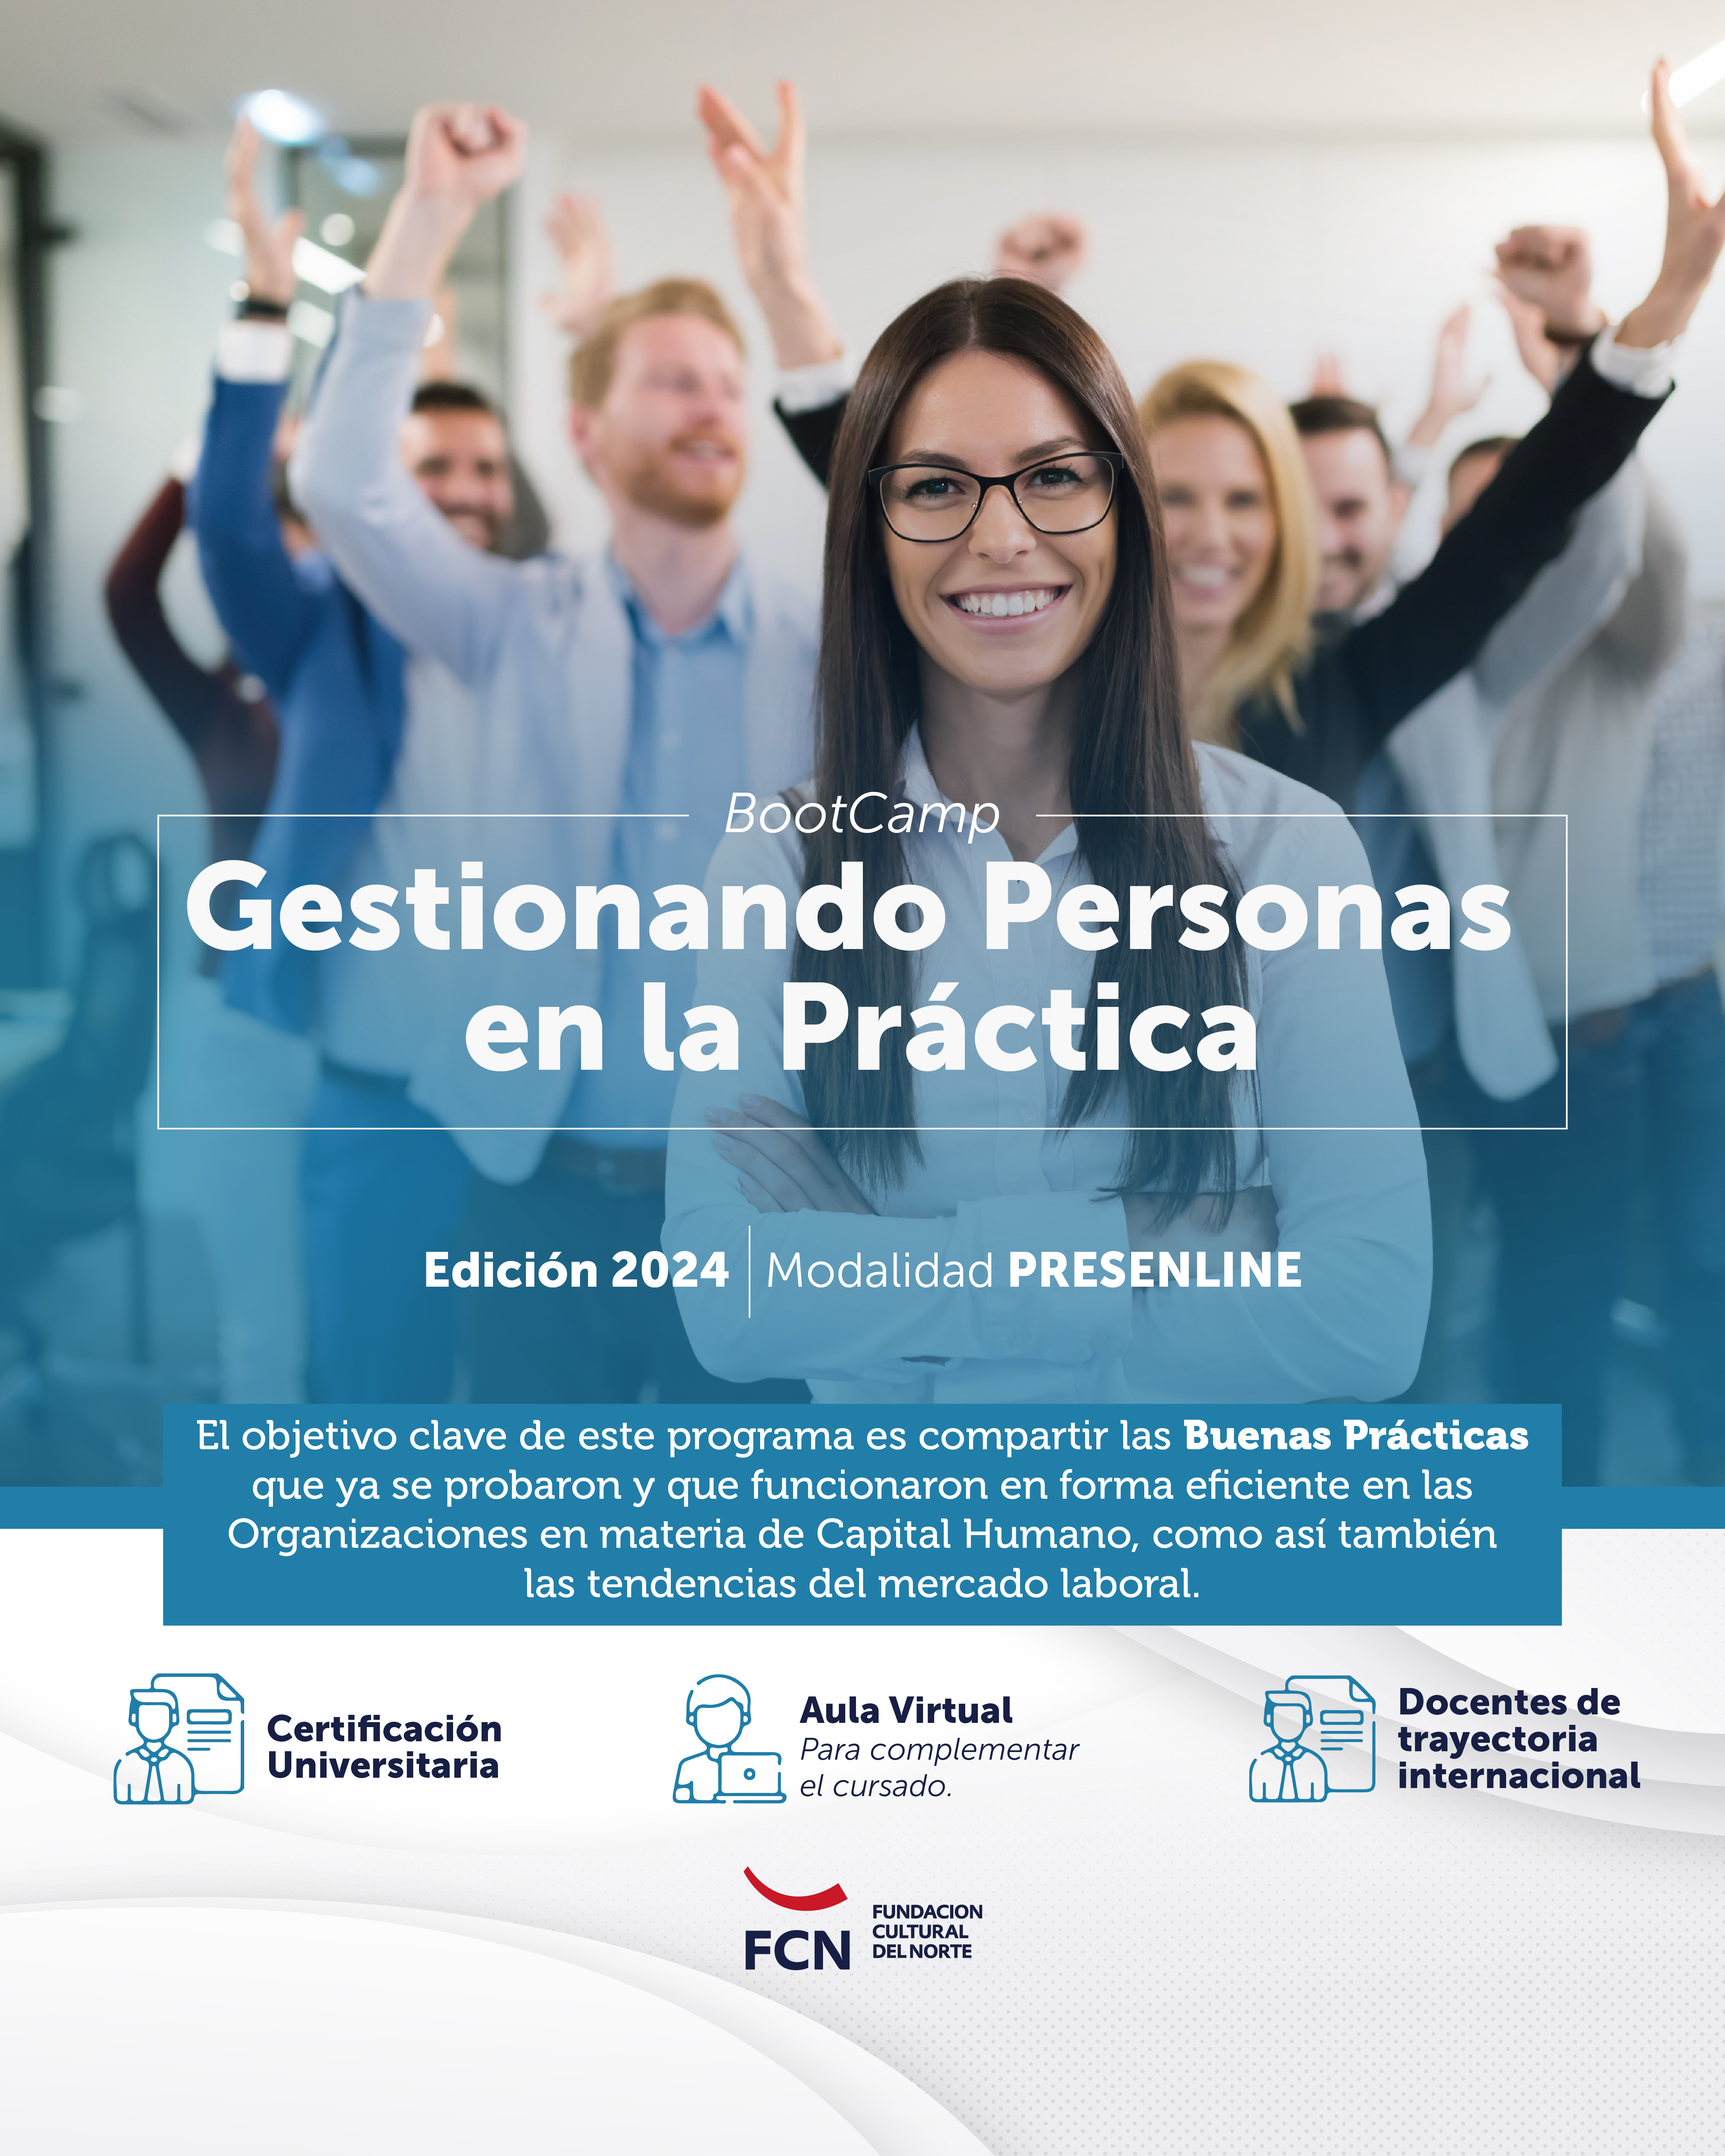 BootCamp Gestionando Personas en la Práctica - Edición 2024